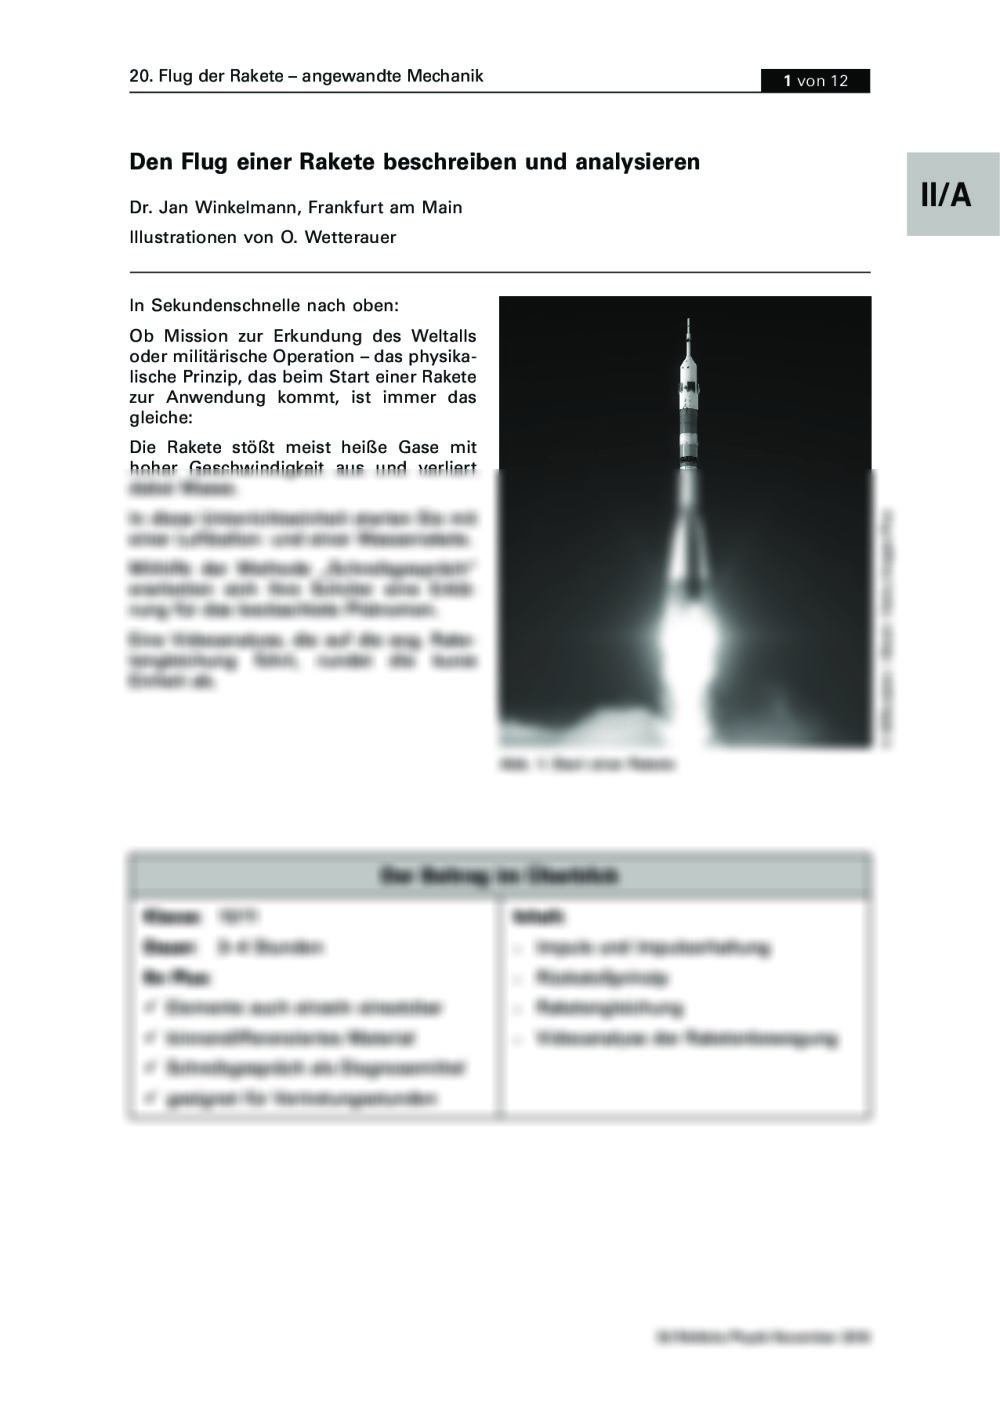 Den Flug einer Rakete beschreiben und analysieren - Seite 1